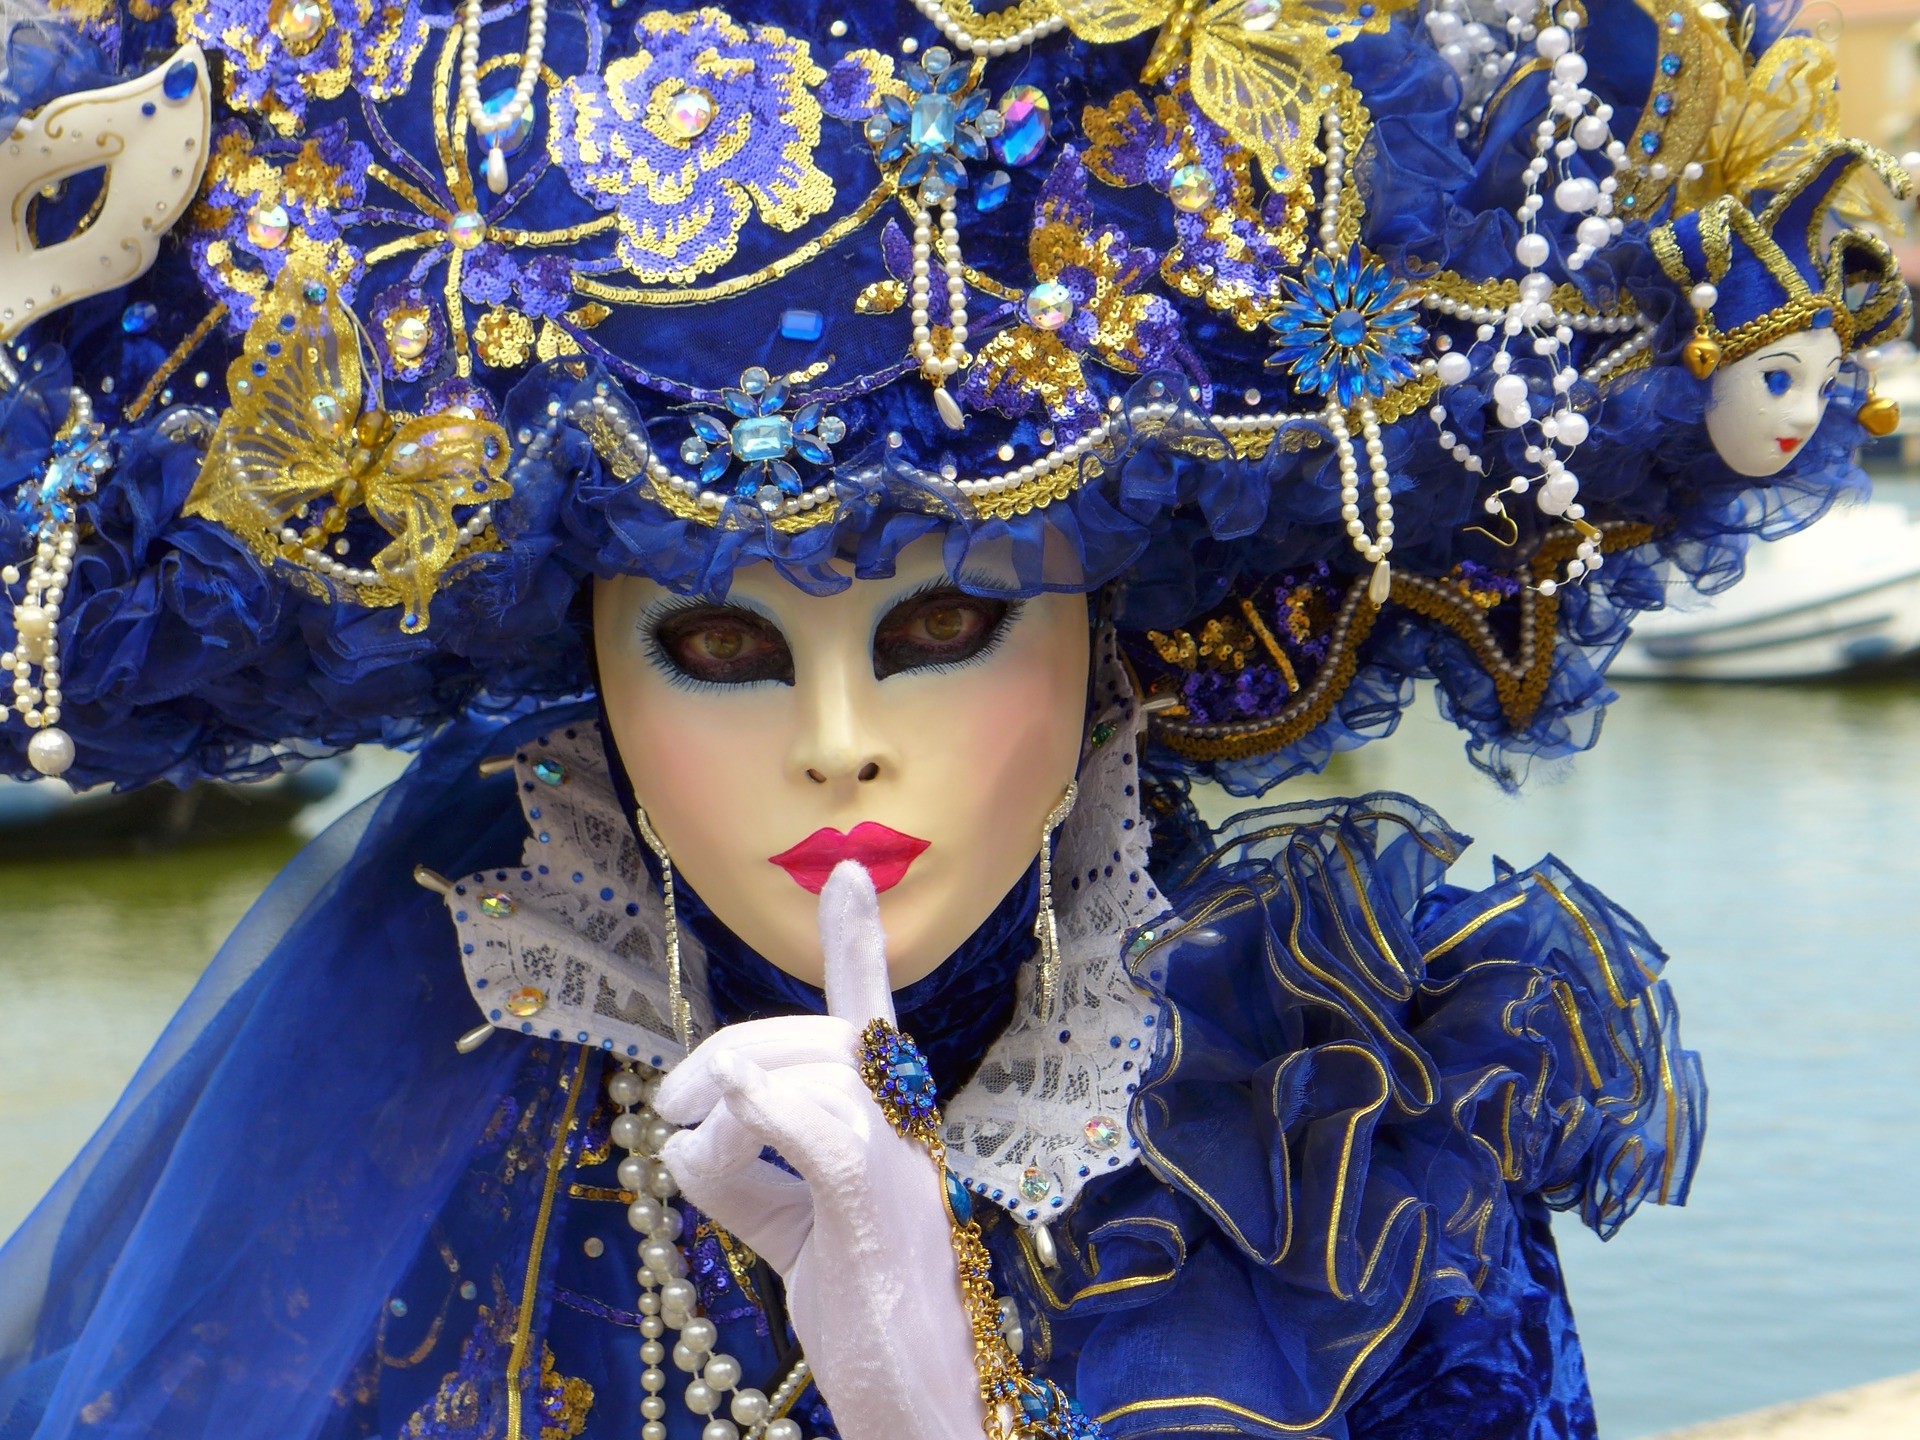 Máscaras del Carnaval de Venecia y su historia - CLASES DE ITALIANO